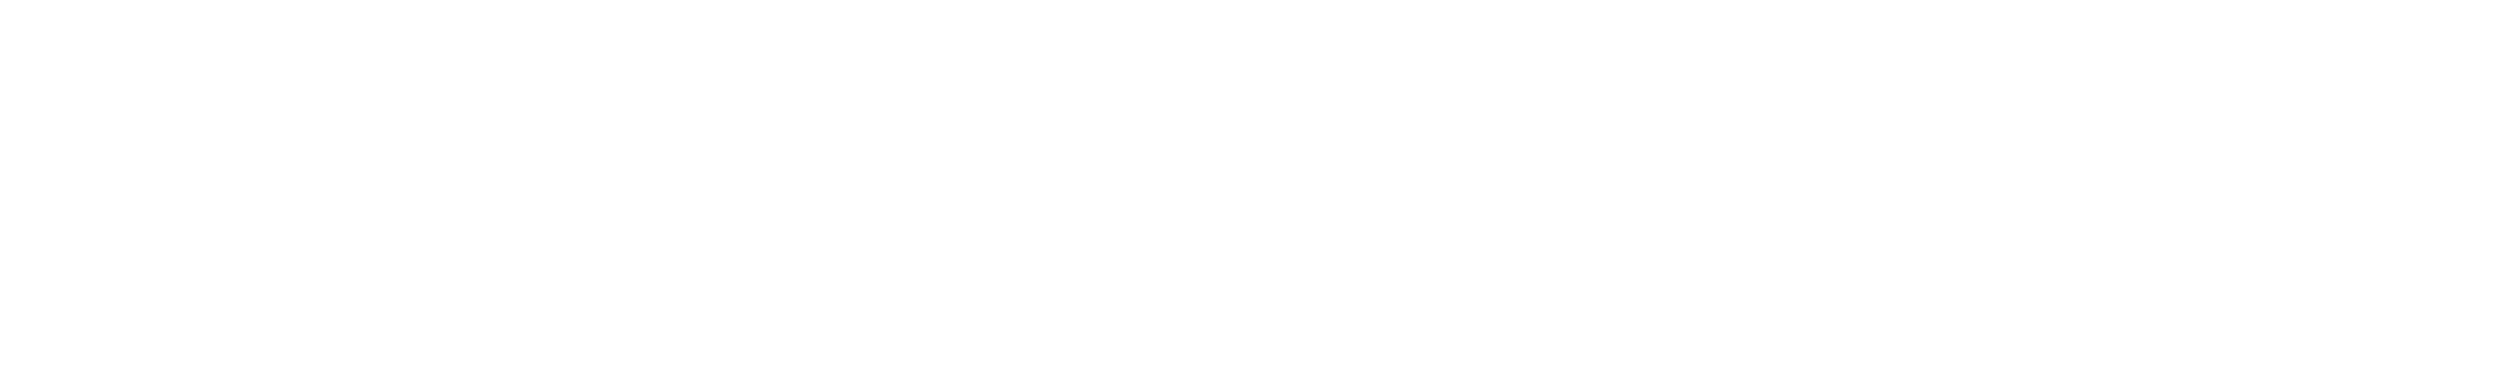 rws logo + text white